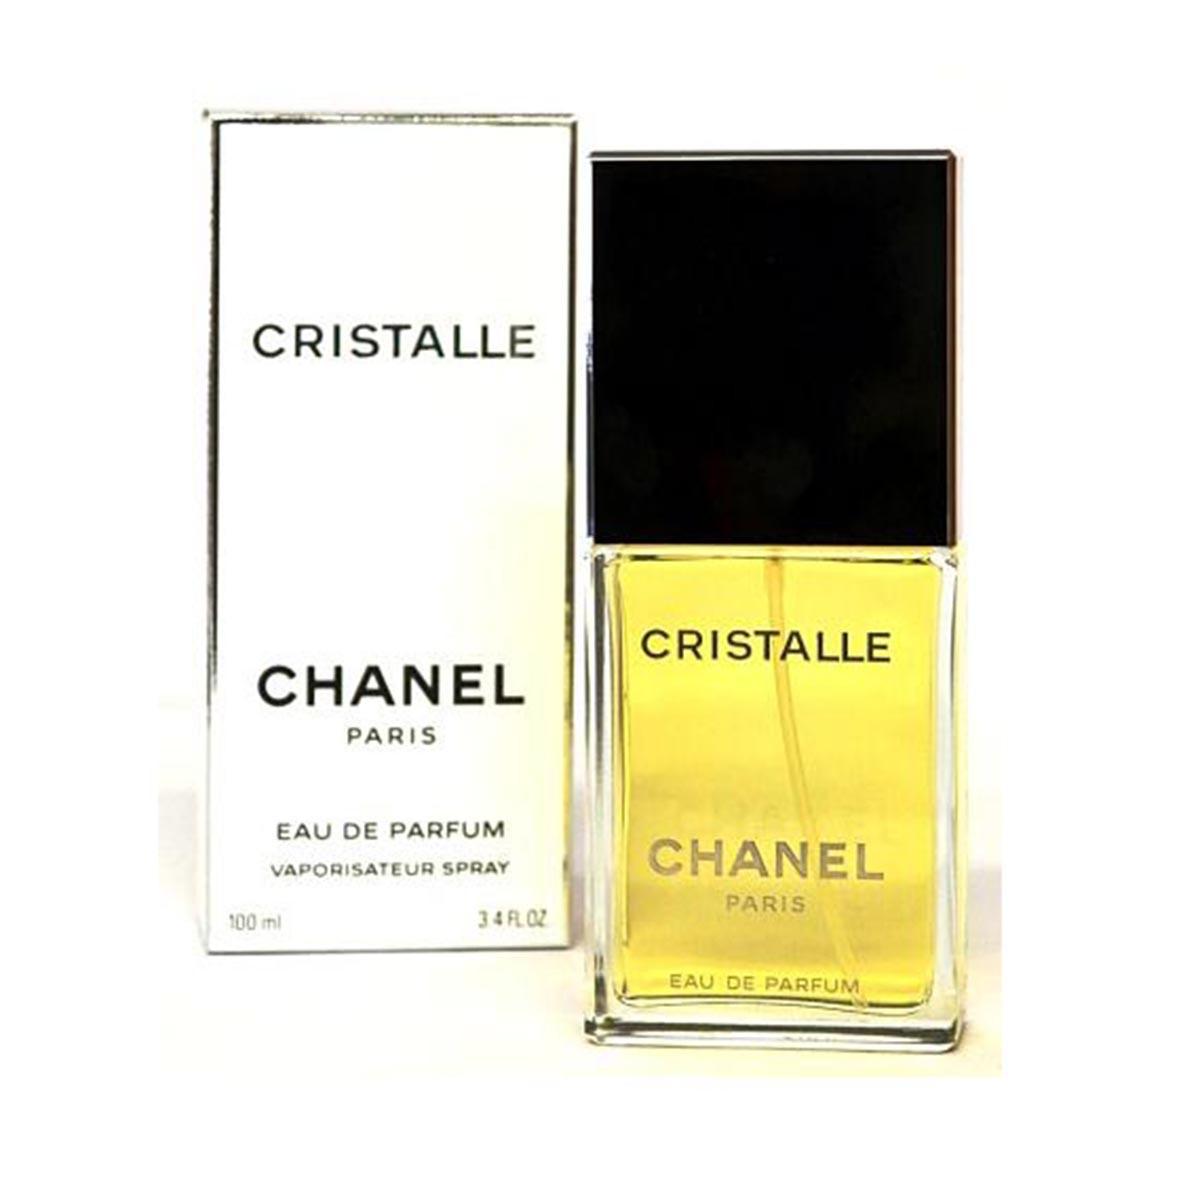 chanel-cristalle-eau-de-parfum-100ml